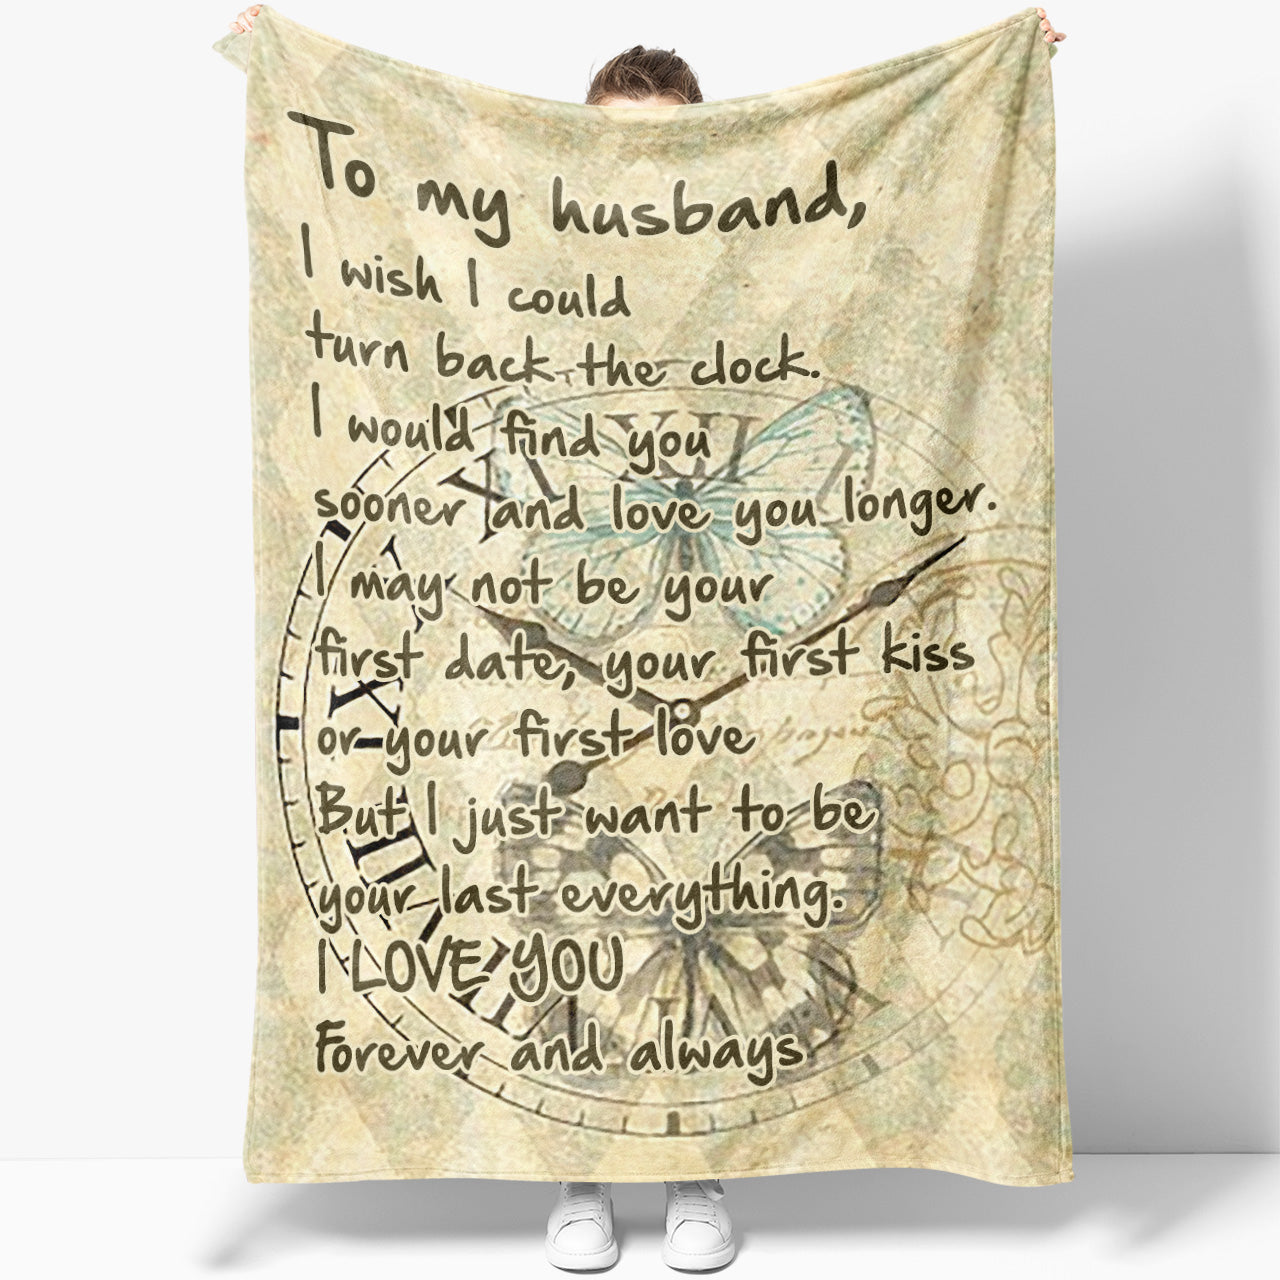 Blanket Gift For Him, Gift Ideas For Husband, Find You Sooner